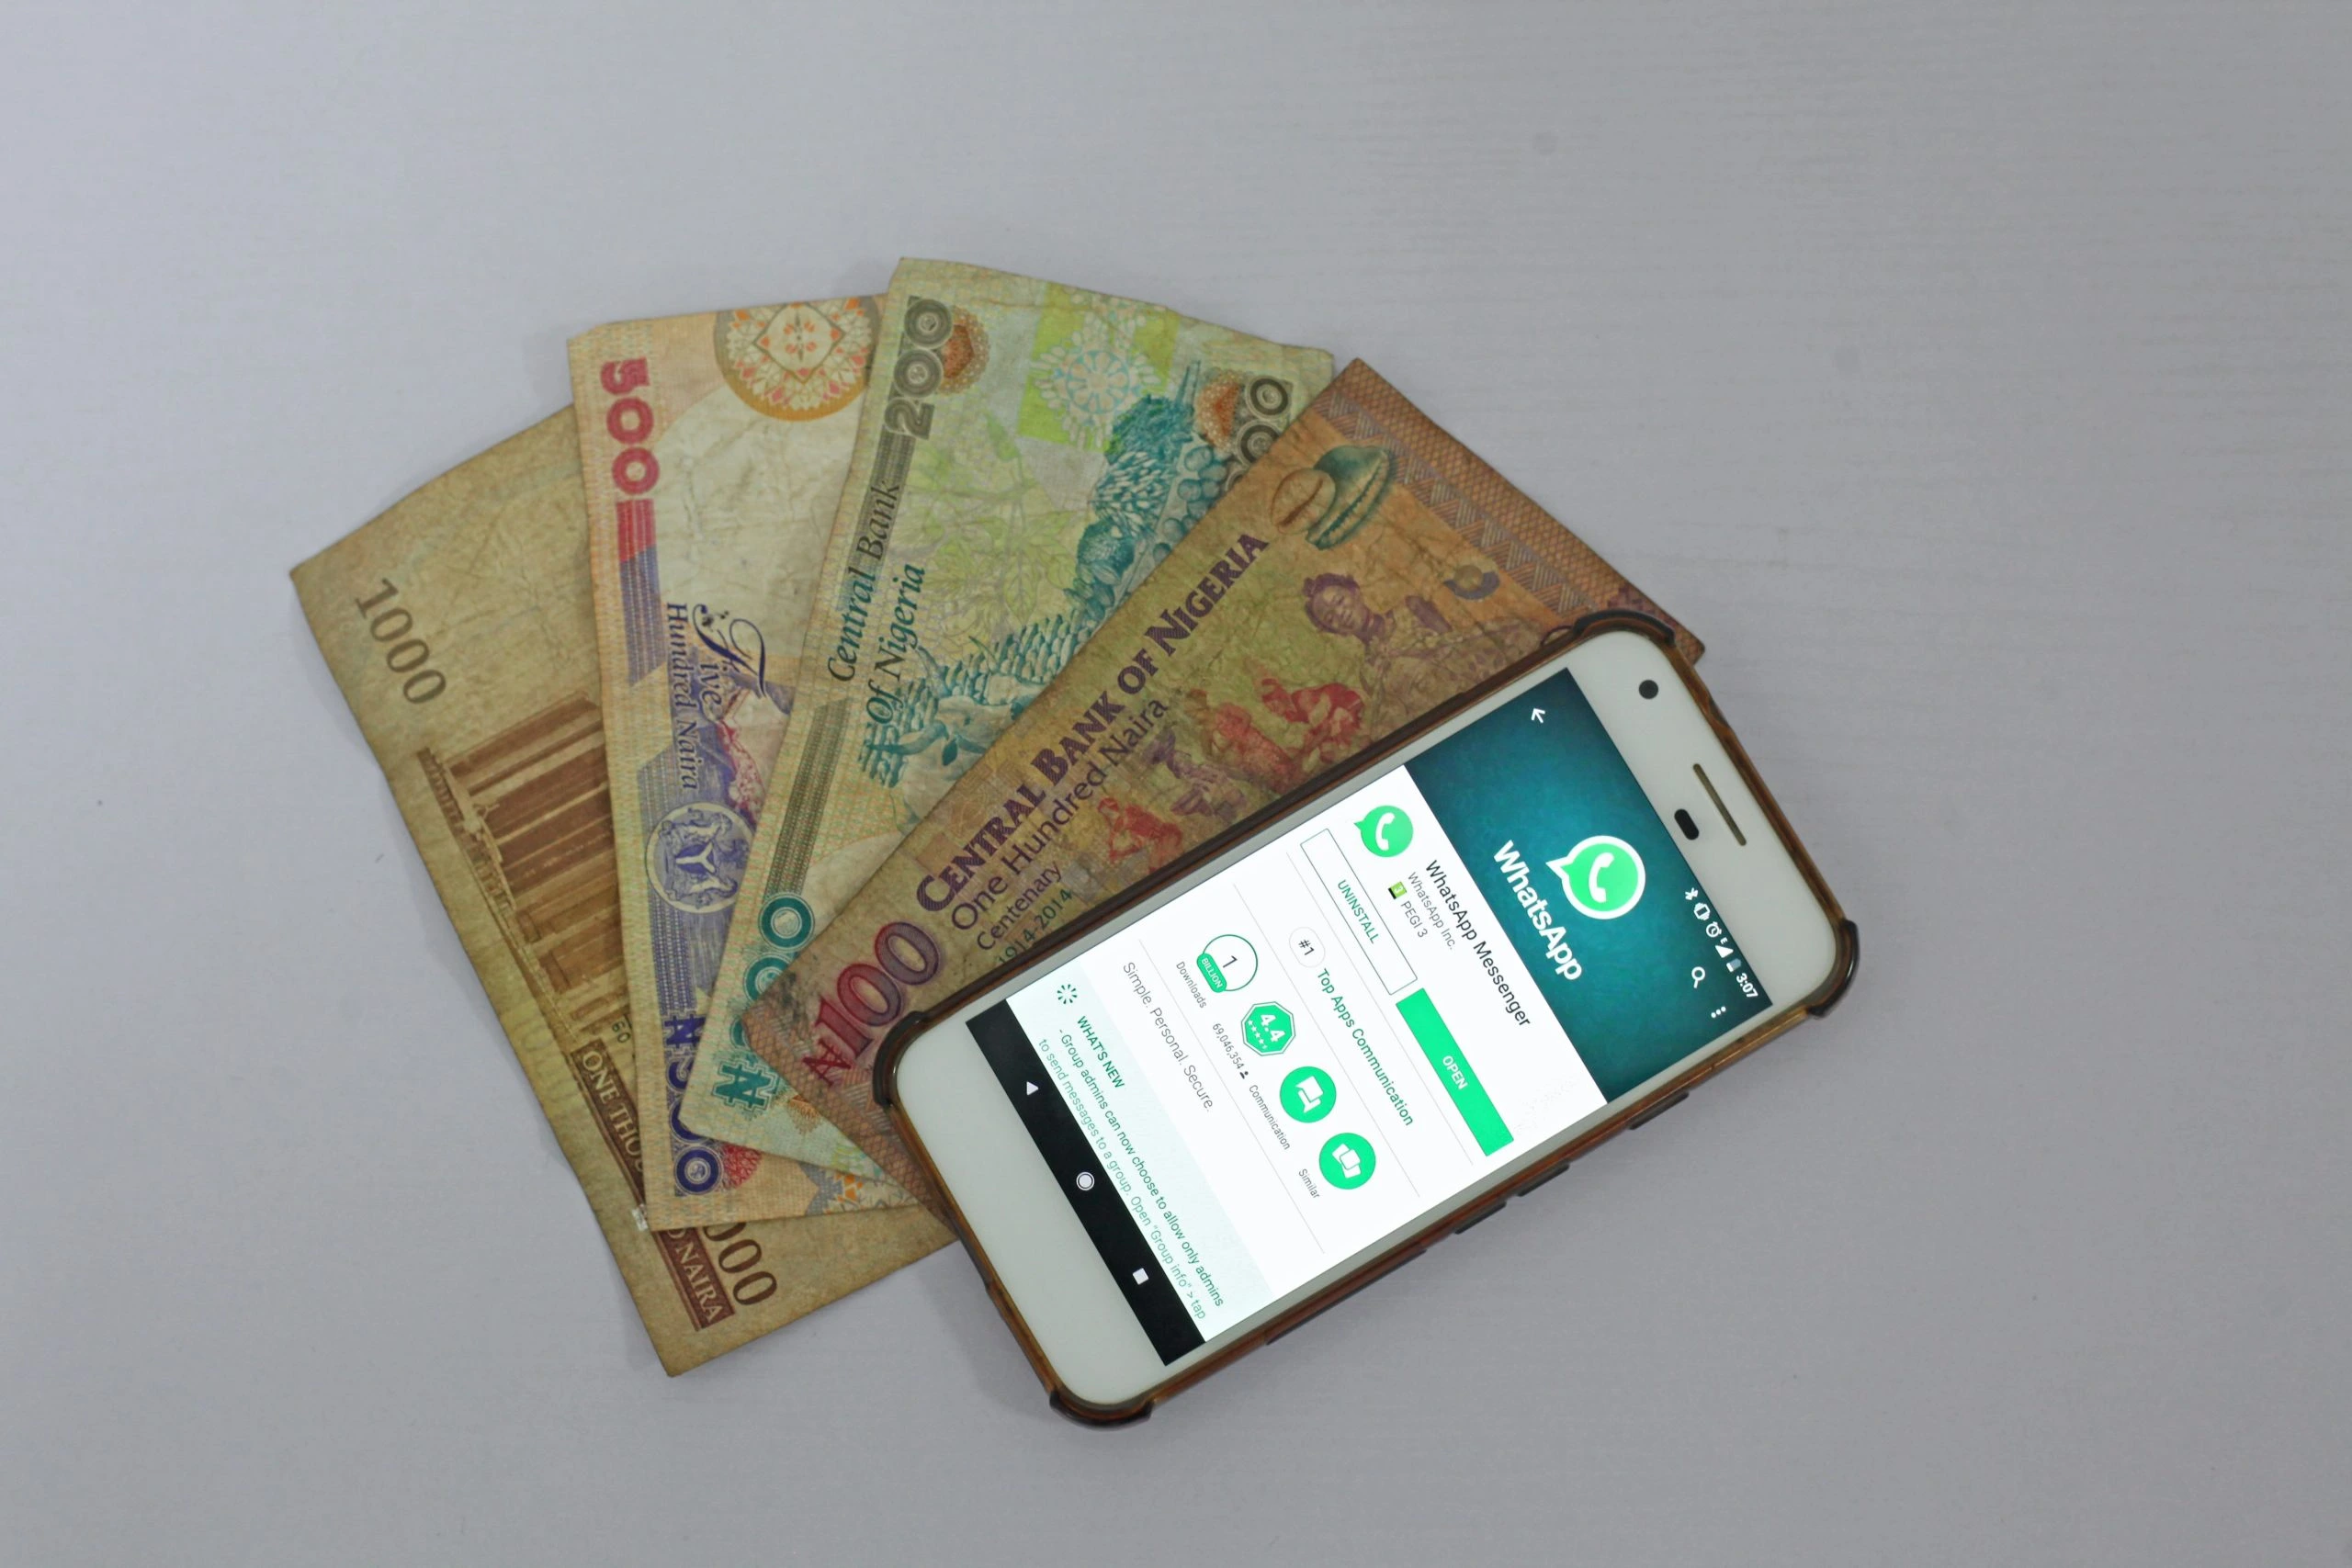 Whatsapp app on mobile phone next to Nigerian Naira money